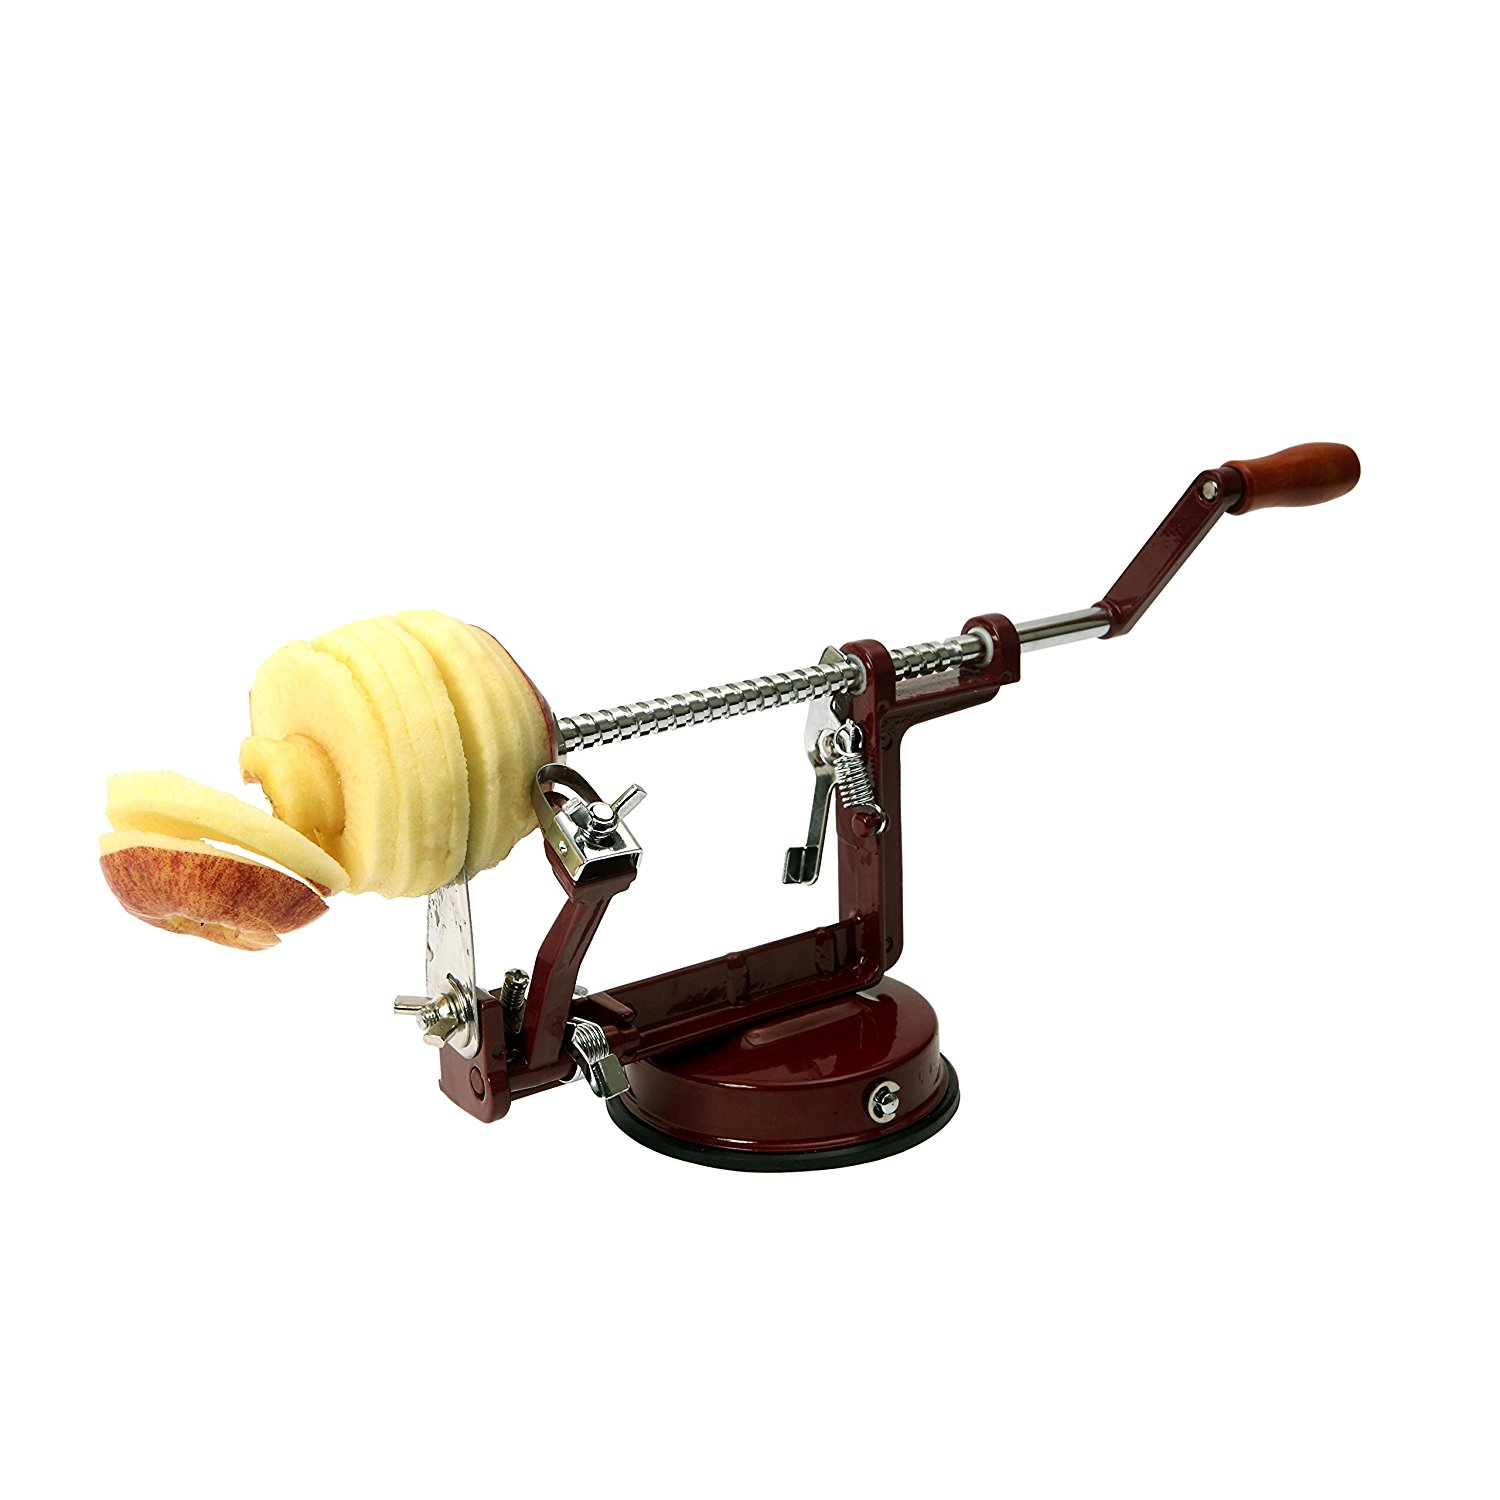 rotary apple peeler